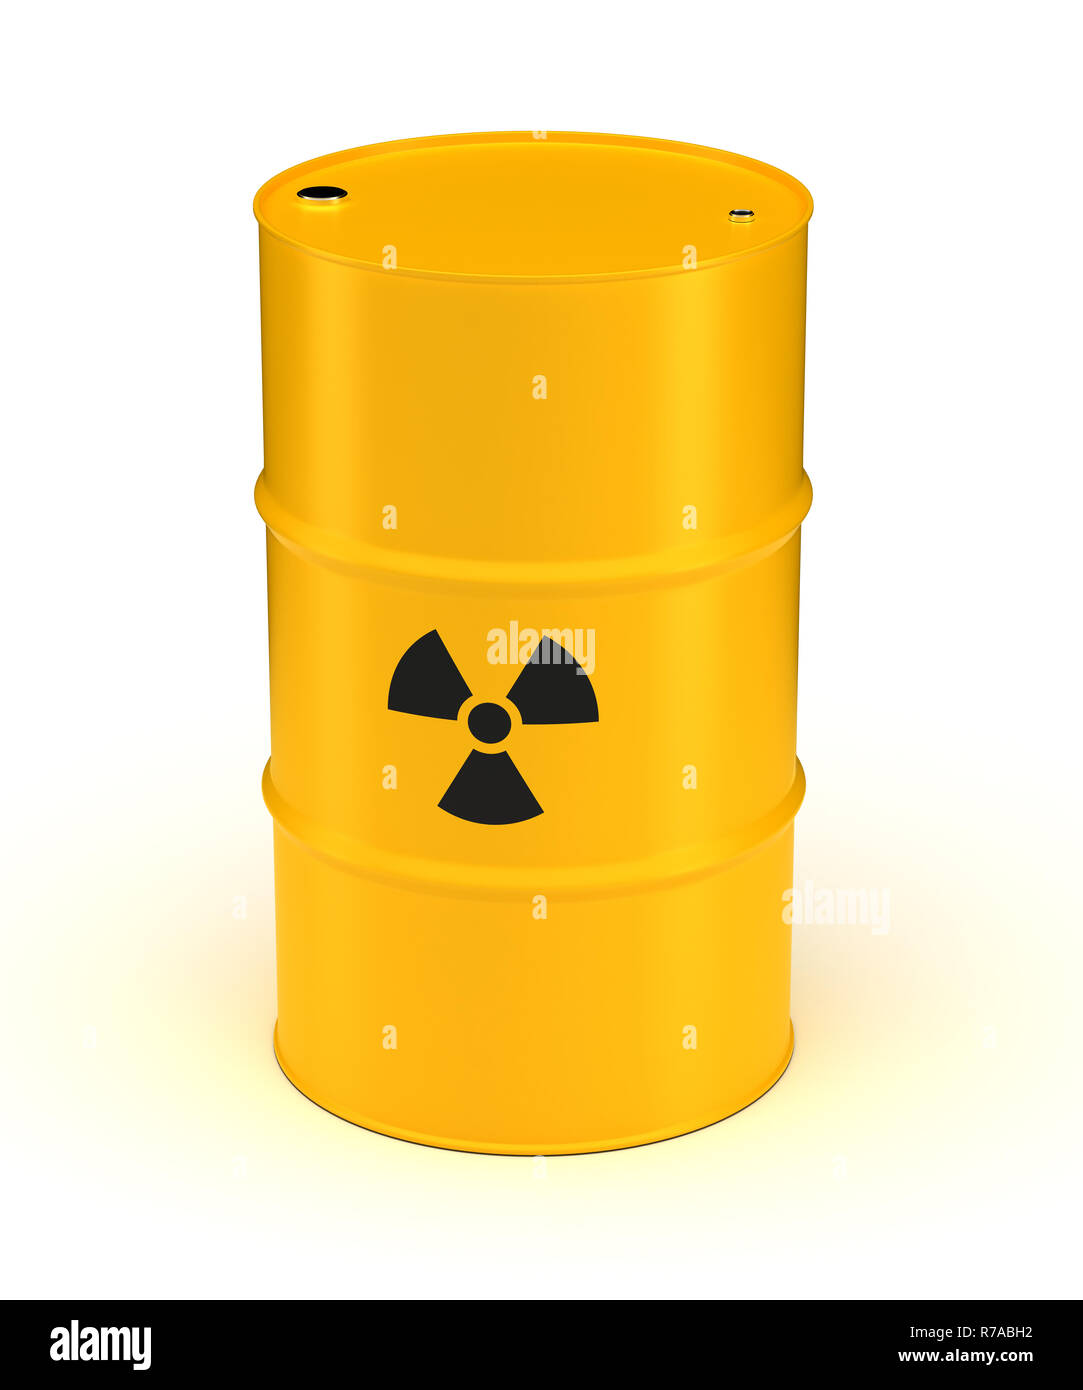 Download Yellow Radioactive Waste Barrel Stock Photo Alamy Yellowimages Mockups